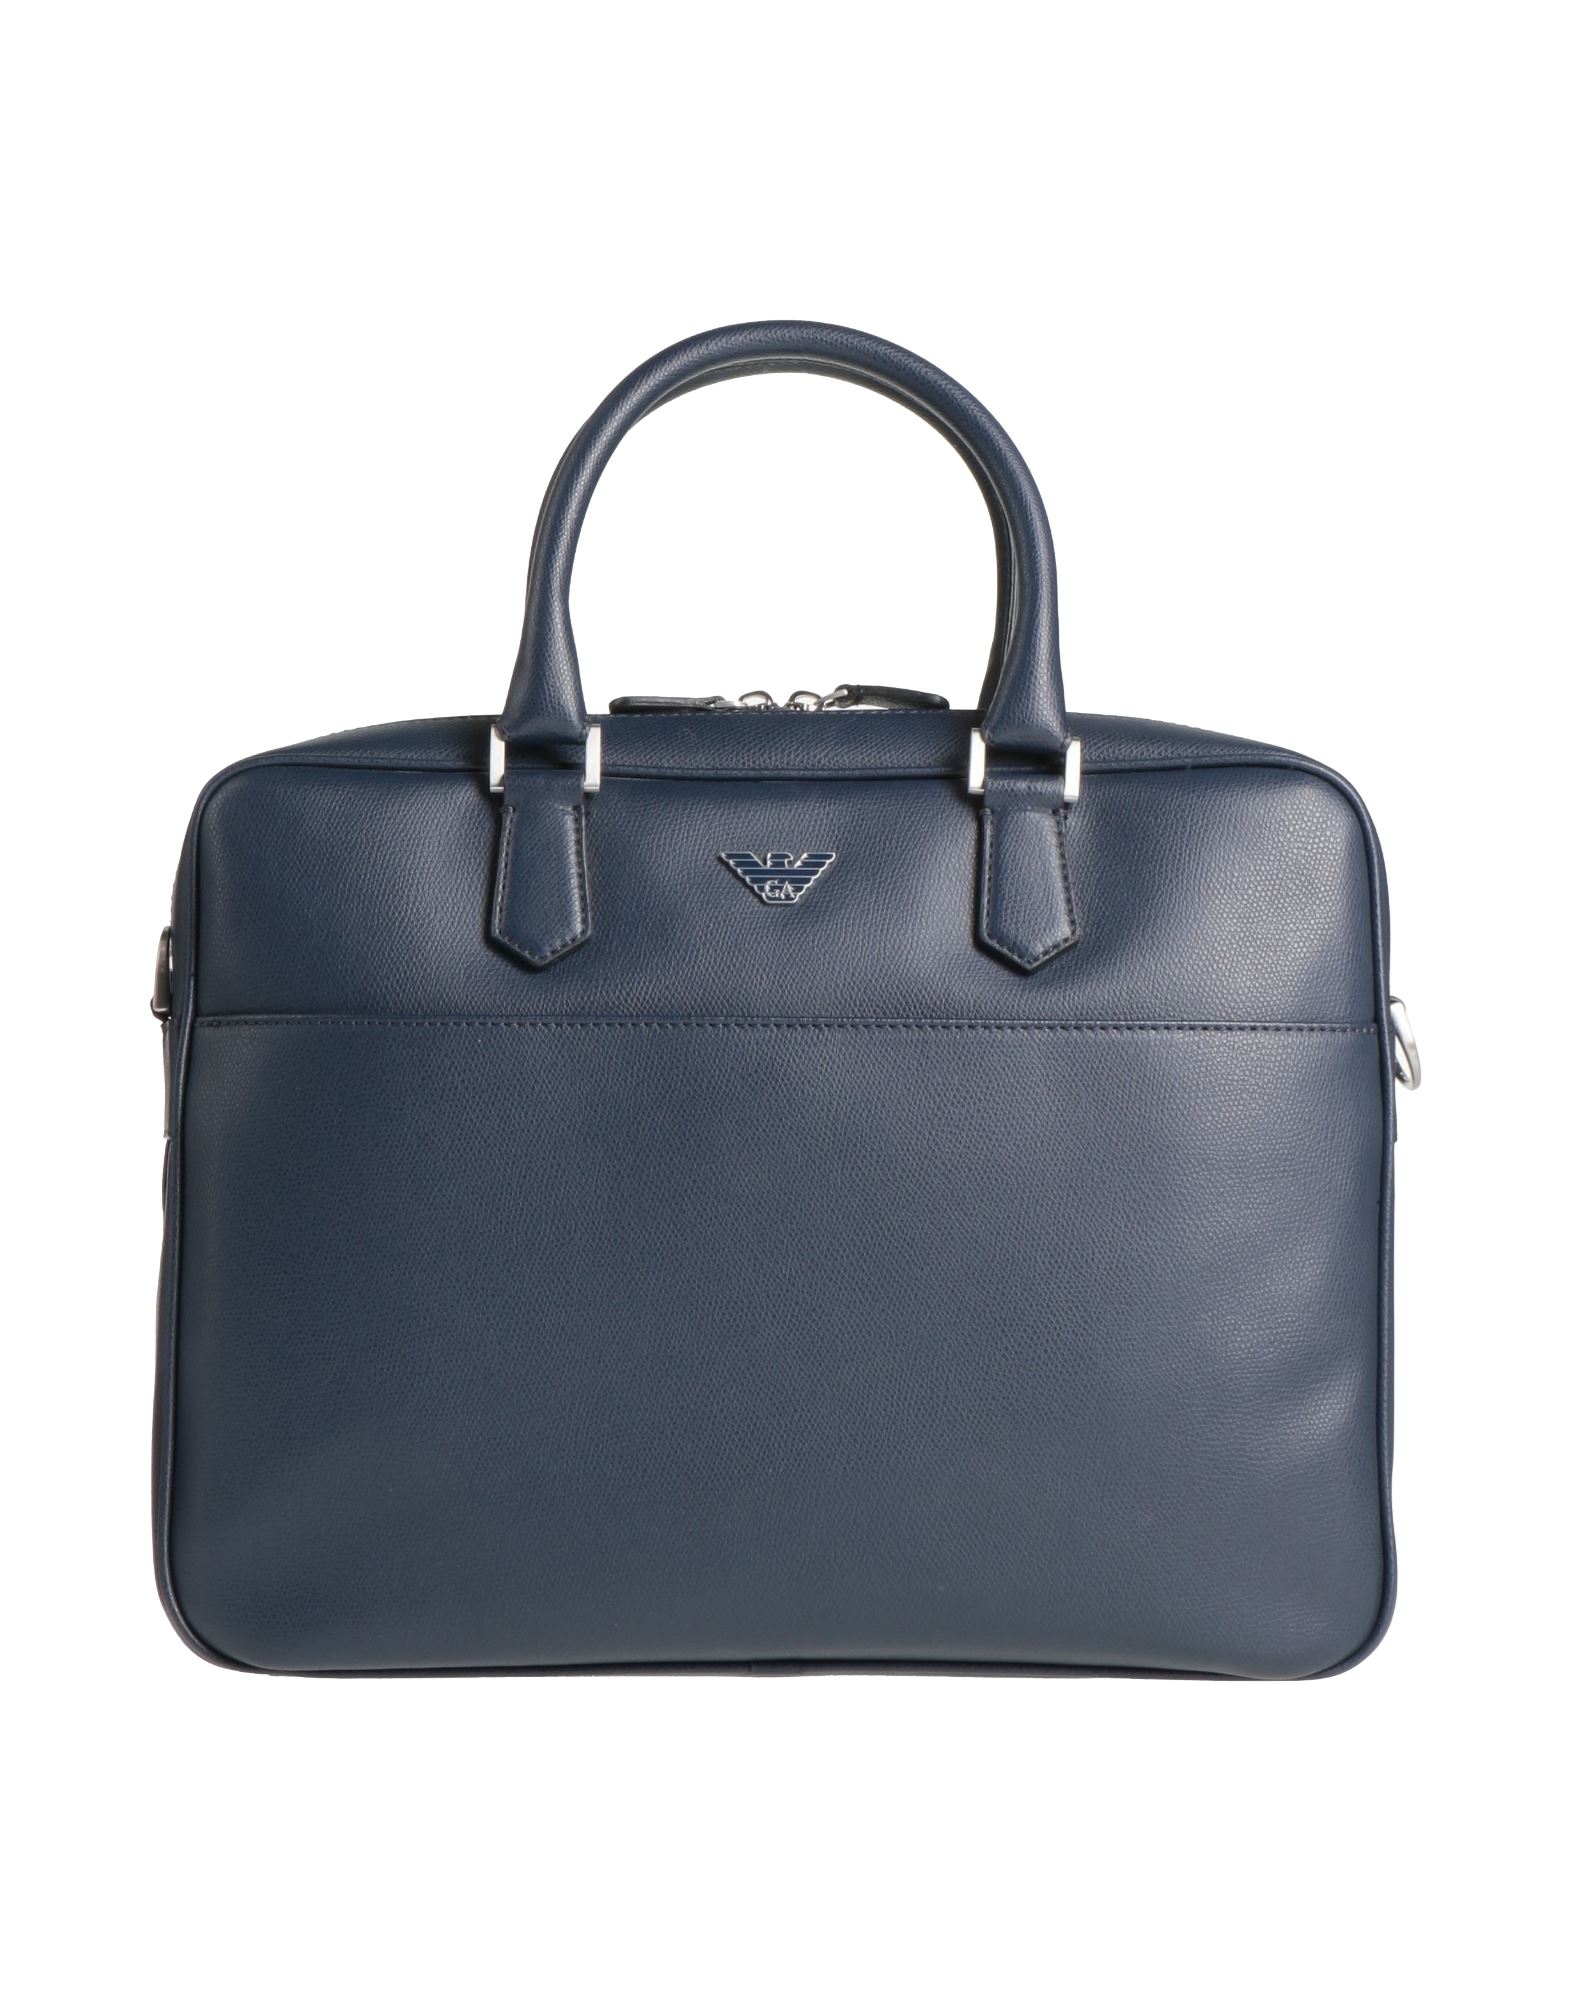 Emporio Armani Handbags In Blue